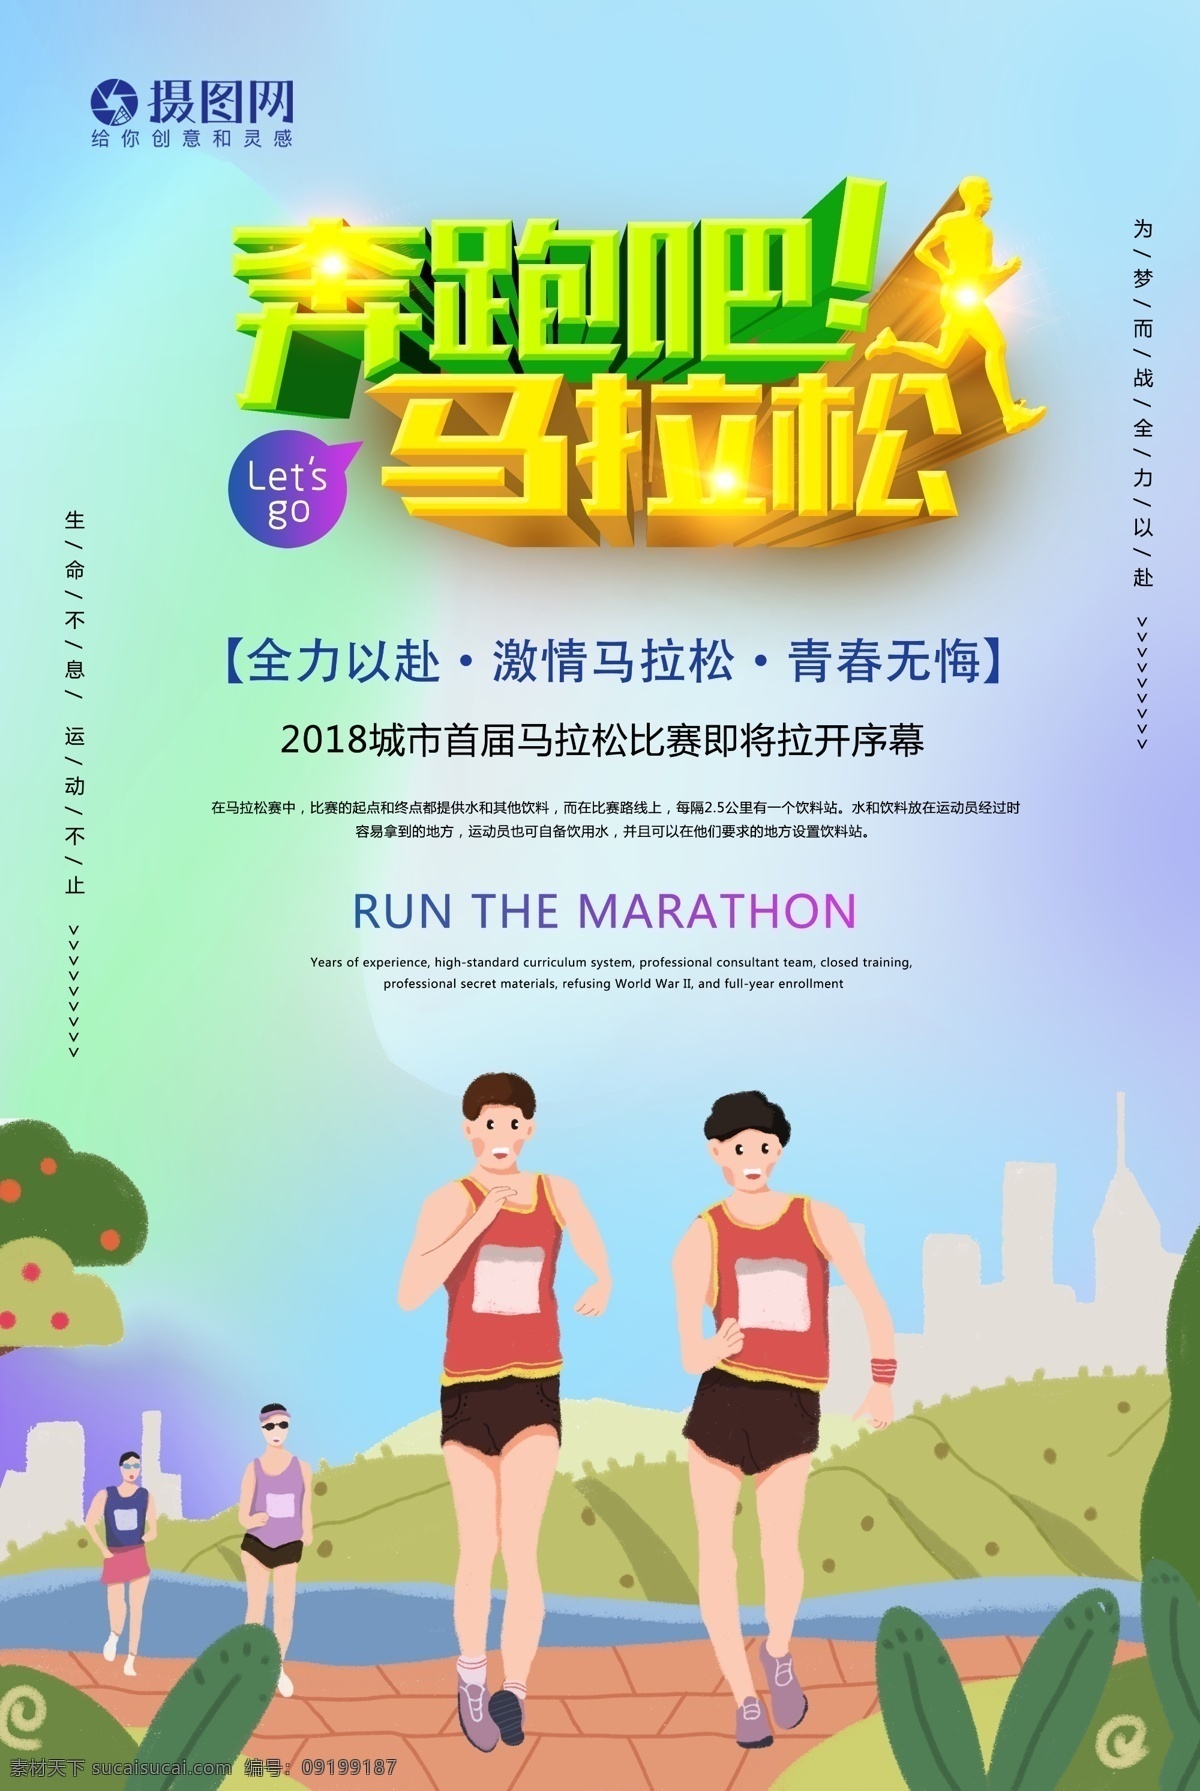 奔跑 马拉松 运动 海报 全城马拉松 奔跑吧 健身 运动海报 跑步